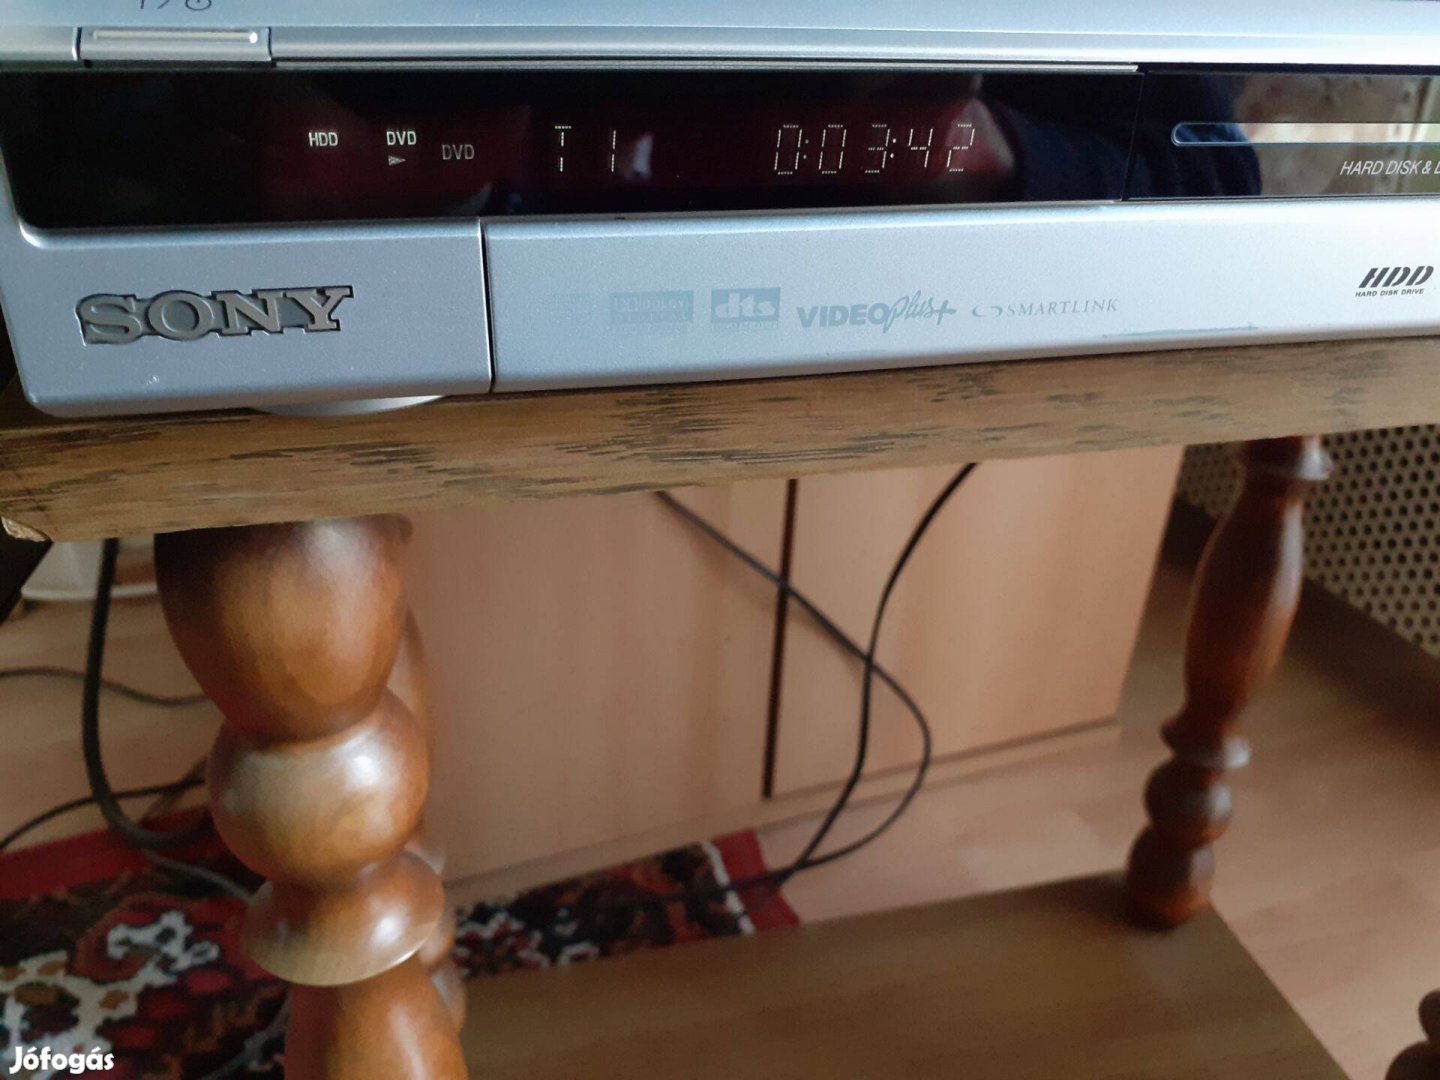 Sony rdr-hx525 típusú hdd dvd recorder felvevő lejátszó író player